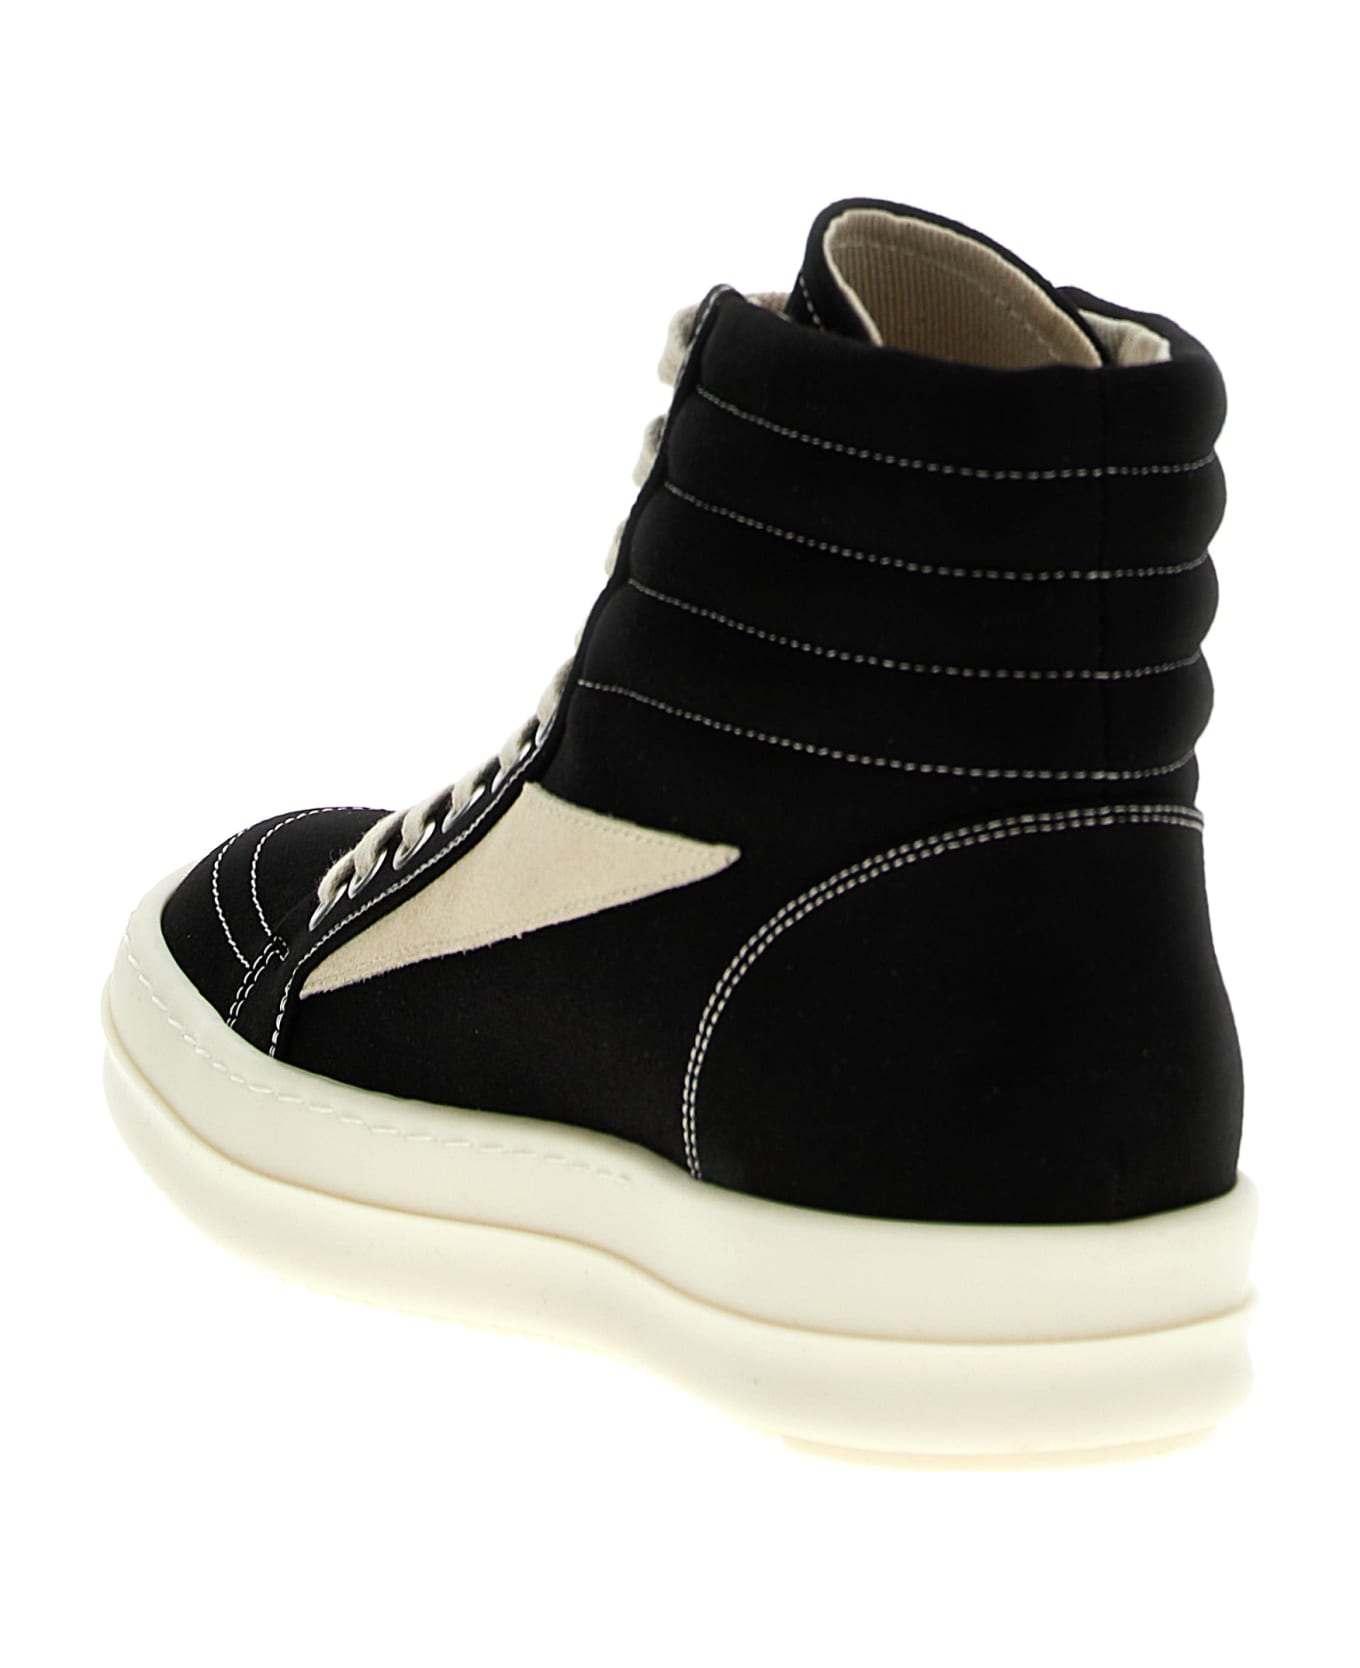 DRKSHDW 'vintage High Sneaks' Sneakers - White/Black